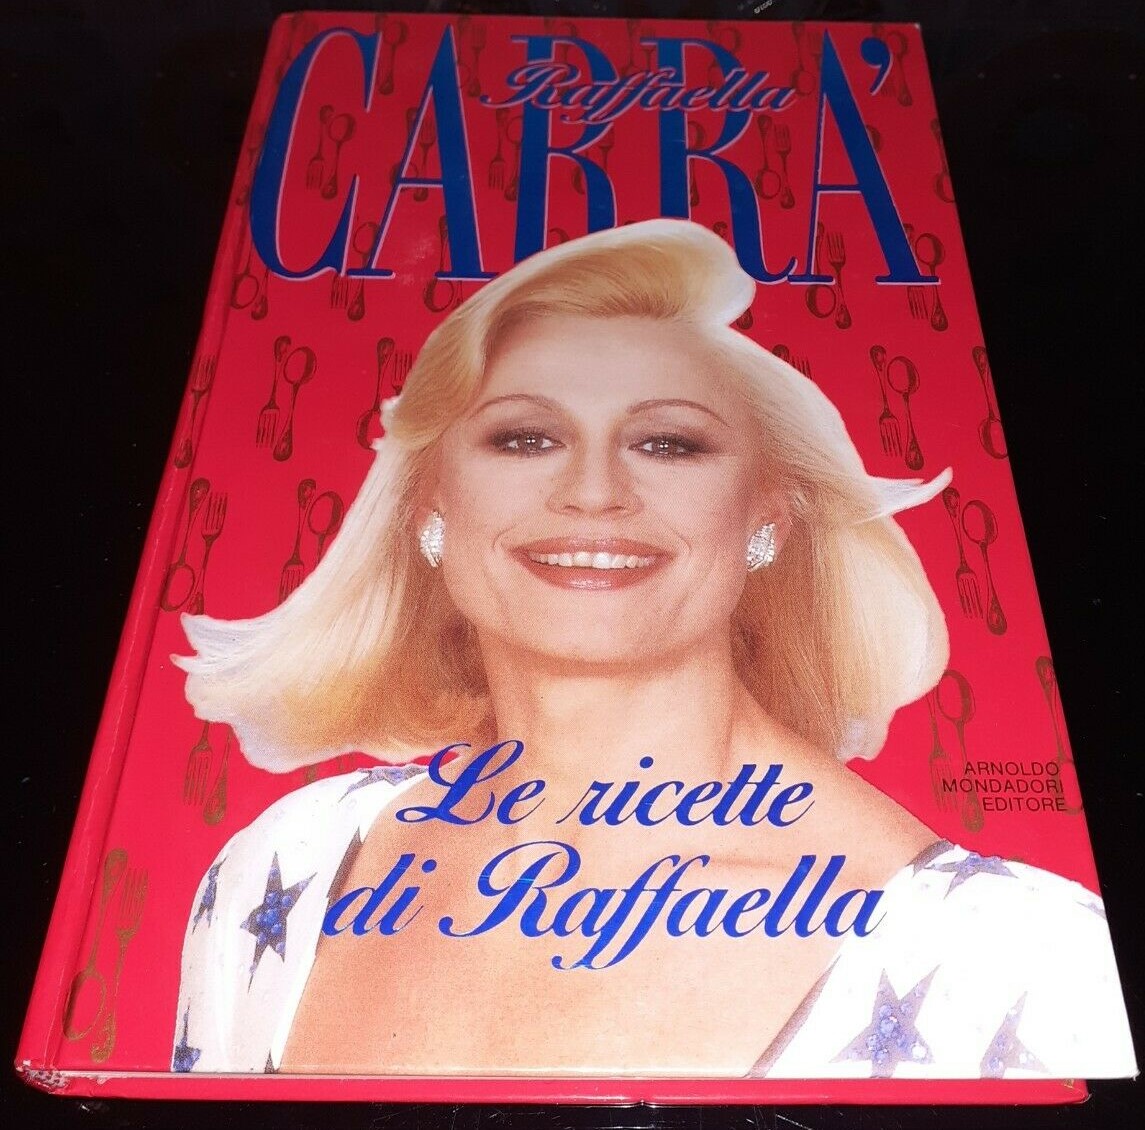 “Le ricette di raffaella” il libro cult di Raffaella Carrà